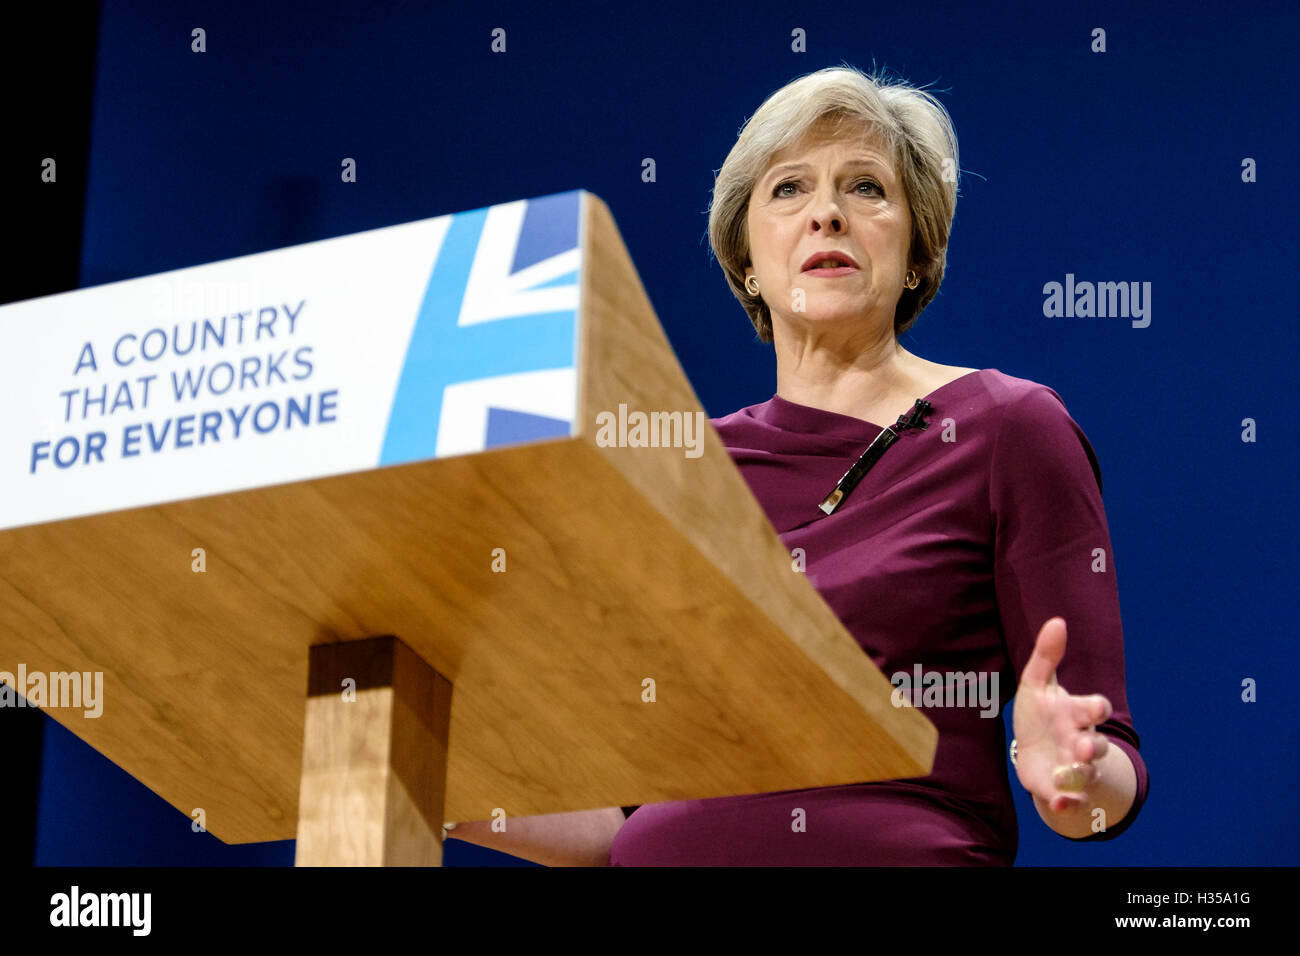 Parteitag der konservativen Tag 4, Finaltag am 10.05.2016 in Birmingham ICC, Birmingham. Personen im Bild: Theresa May, Premierminister des Vereinigten Königreichs, befasst sich Konferenz. Bild von Julie Edwards. Stockfoto